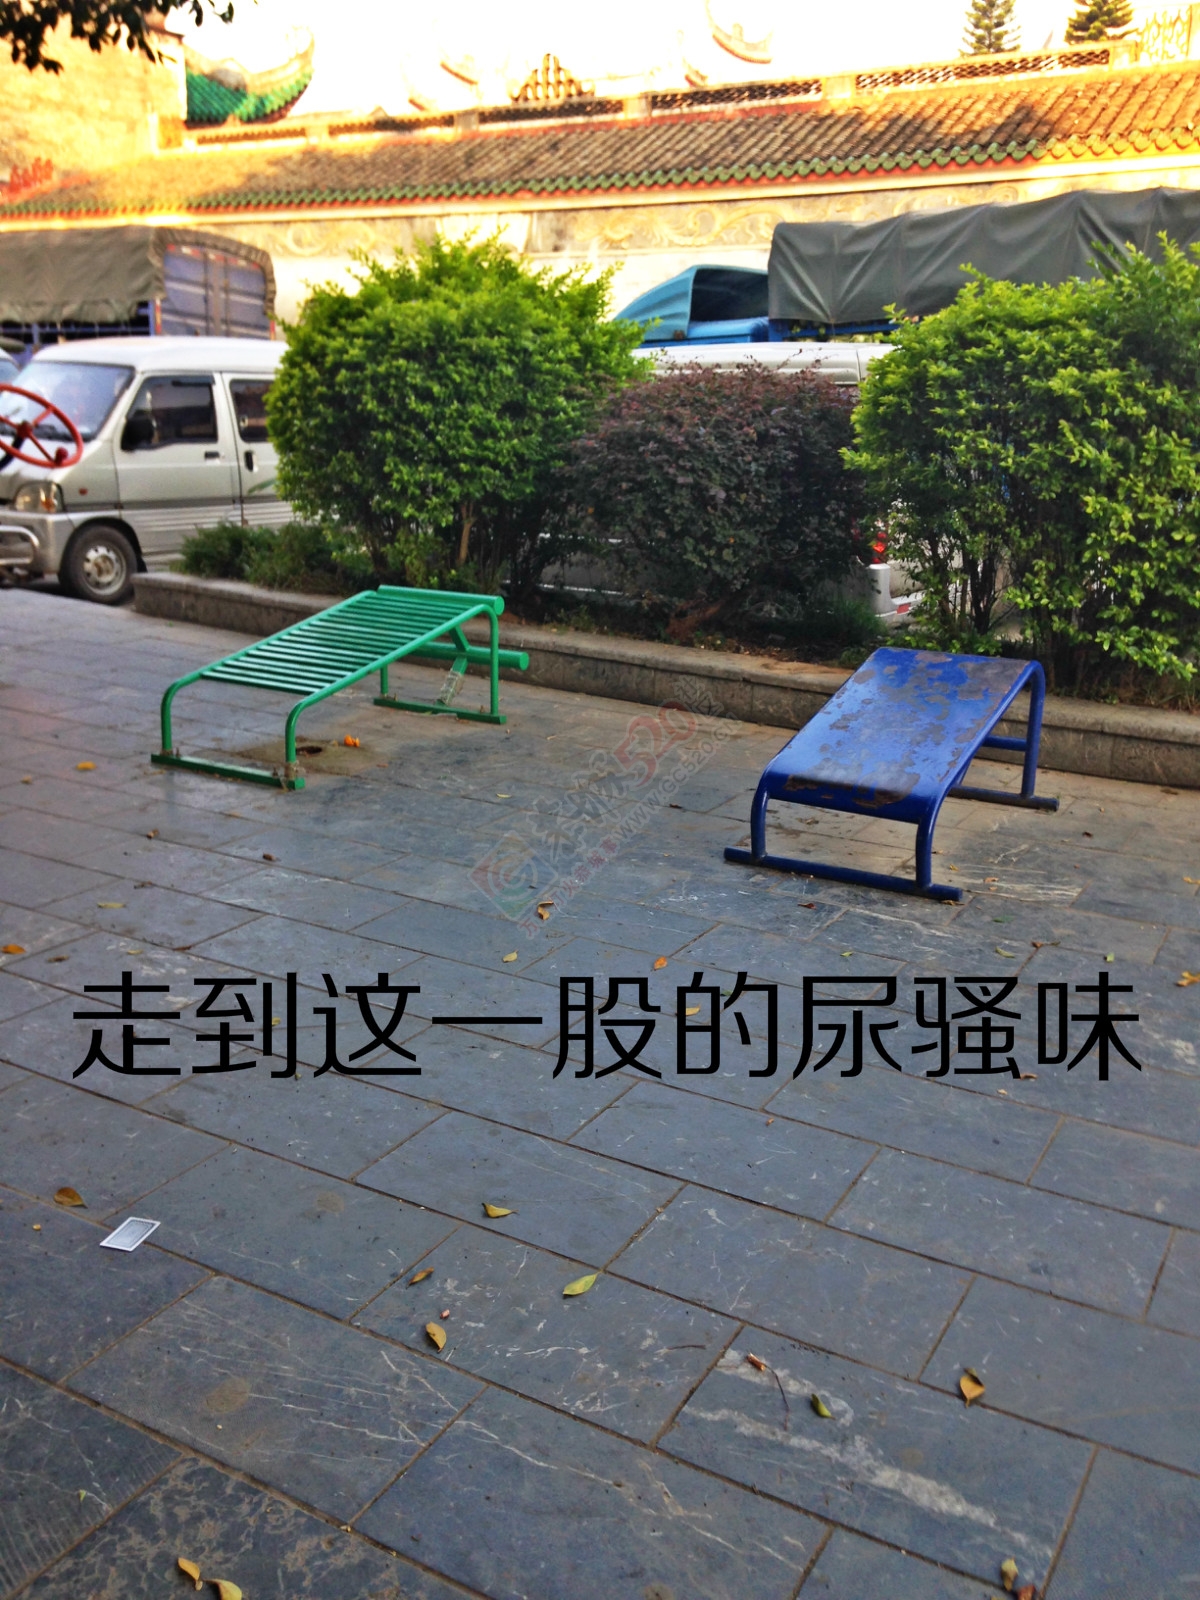 昔日的小广场如今已成了“垃圾堆”571 / 作者:恭城520小奈姐姐 / 帖子ID:128568